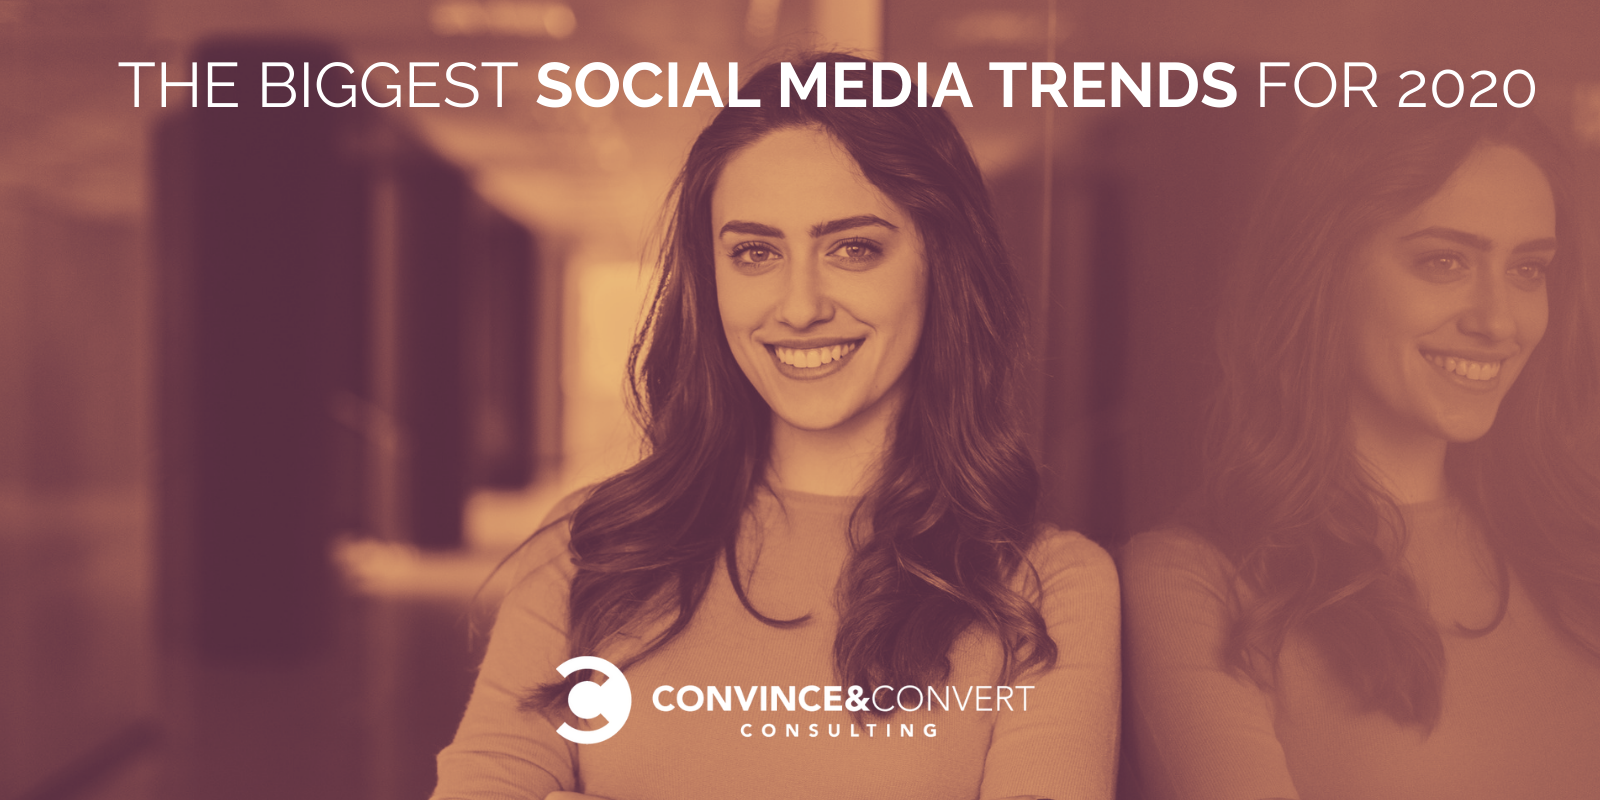 Le più grandi tendenze sui social media per il 2020